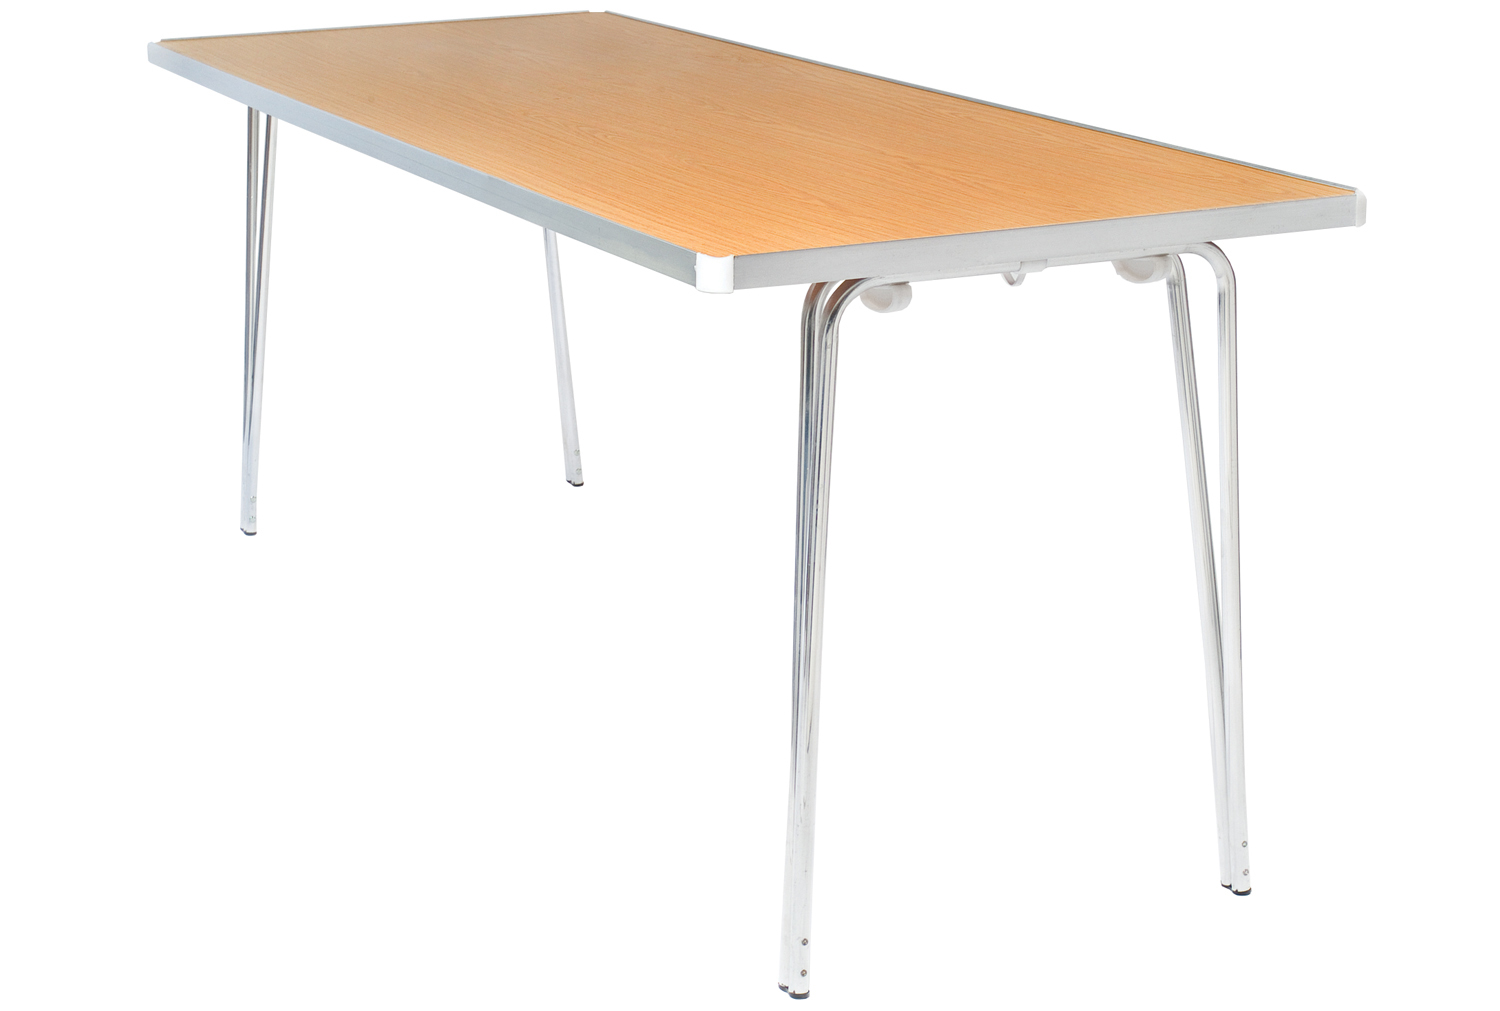 Gopak Economy Folding Tables, 92wx69dx70h (cm), Walnut